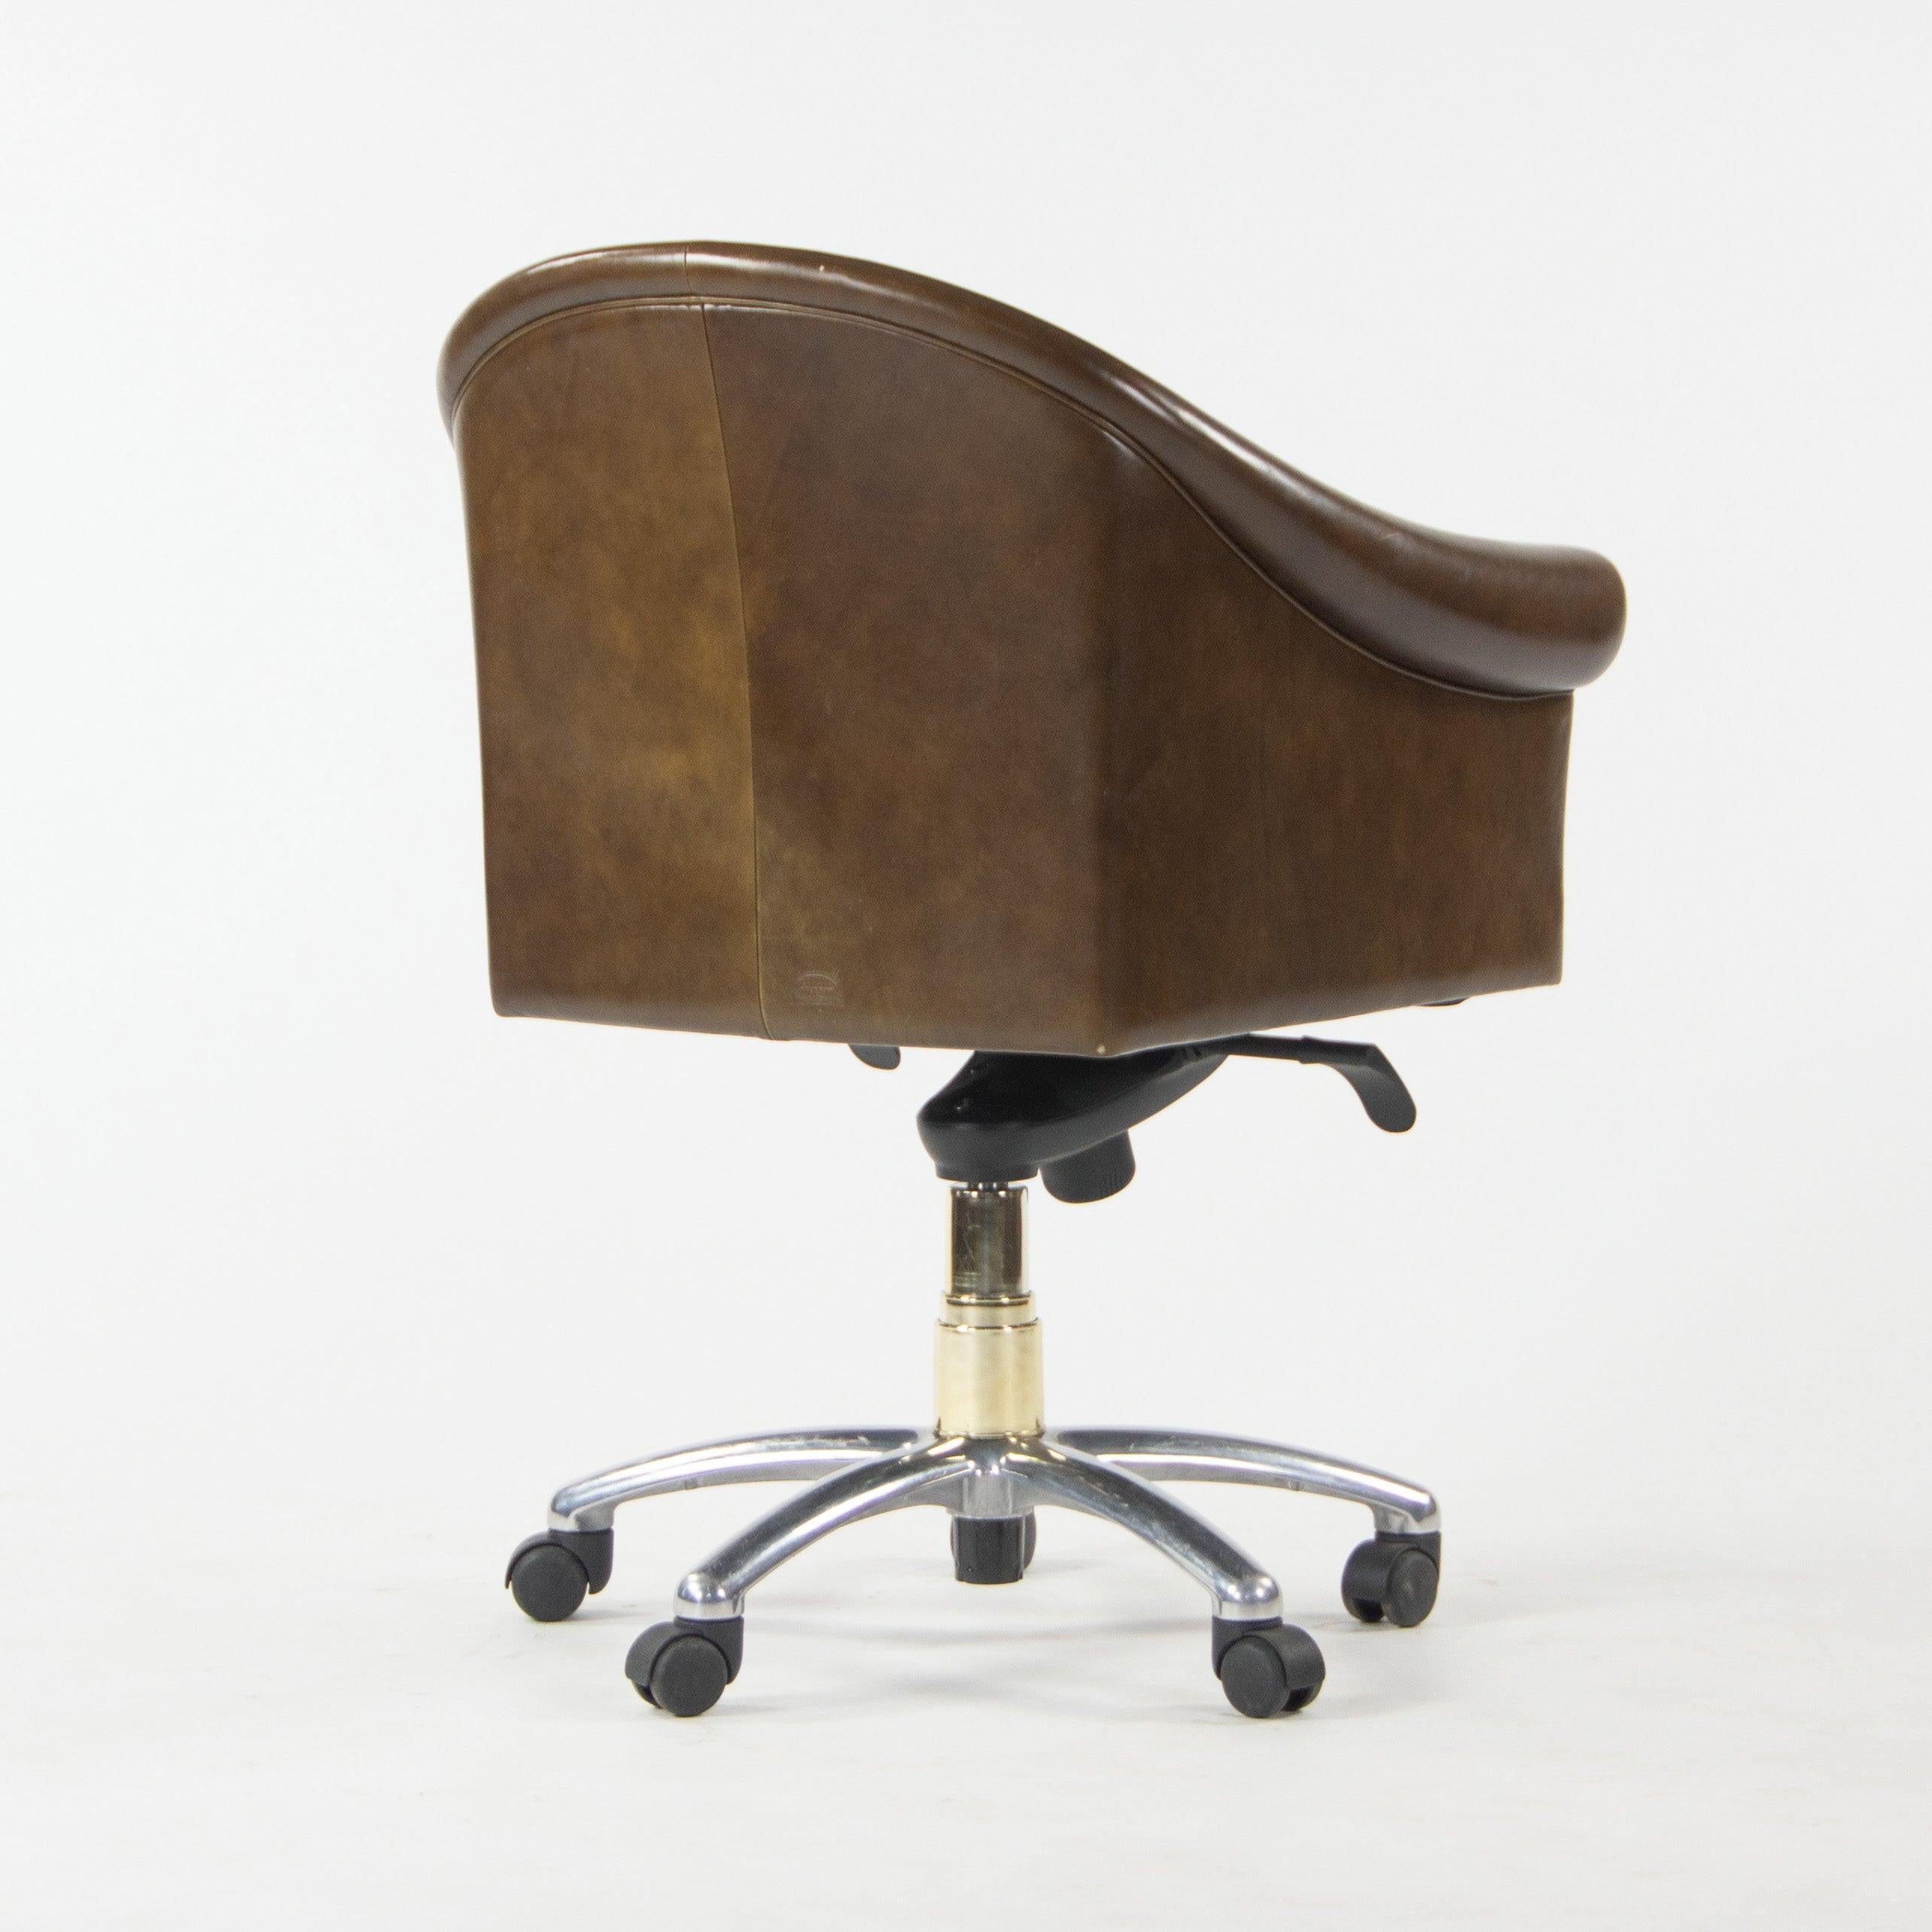 italien Poltrona Frau Brown Leather Luca Scacchetti Sinan Office Desk Chair en vente